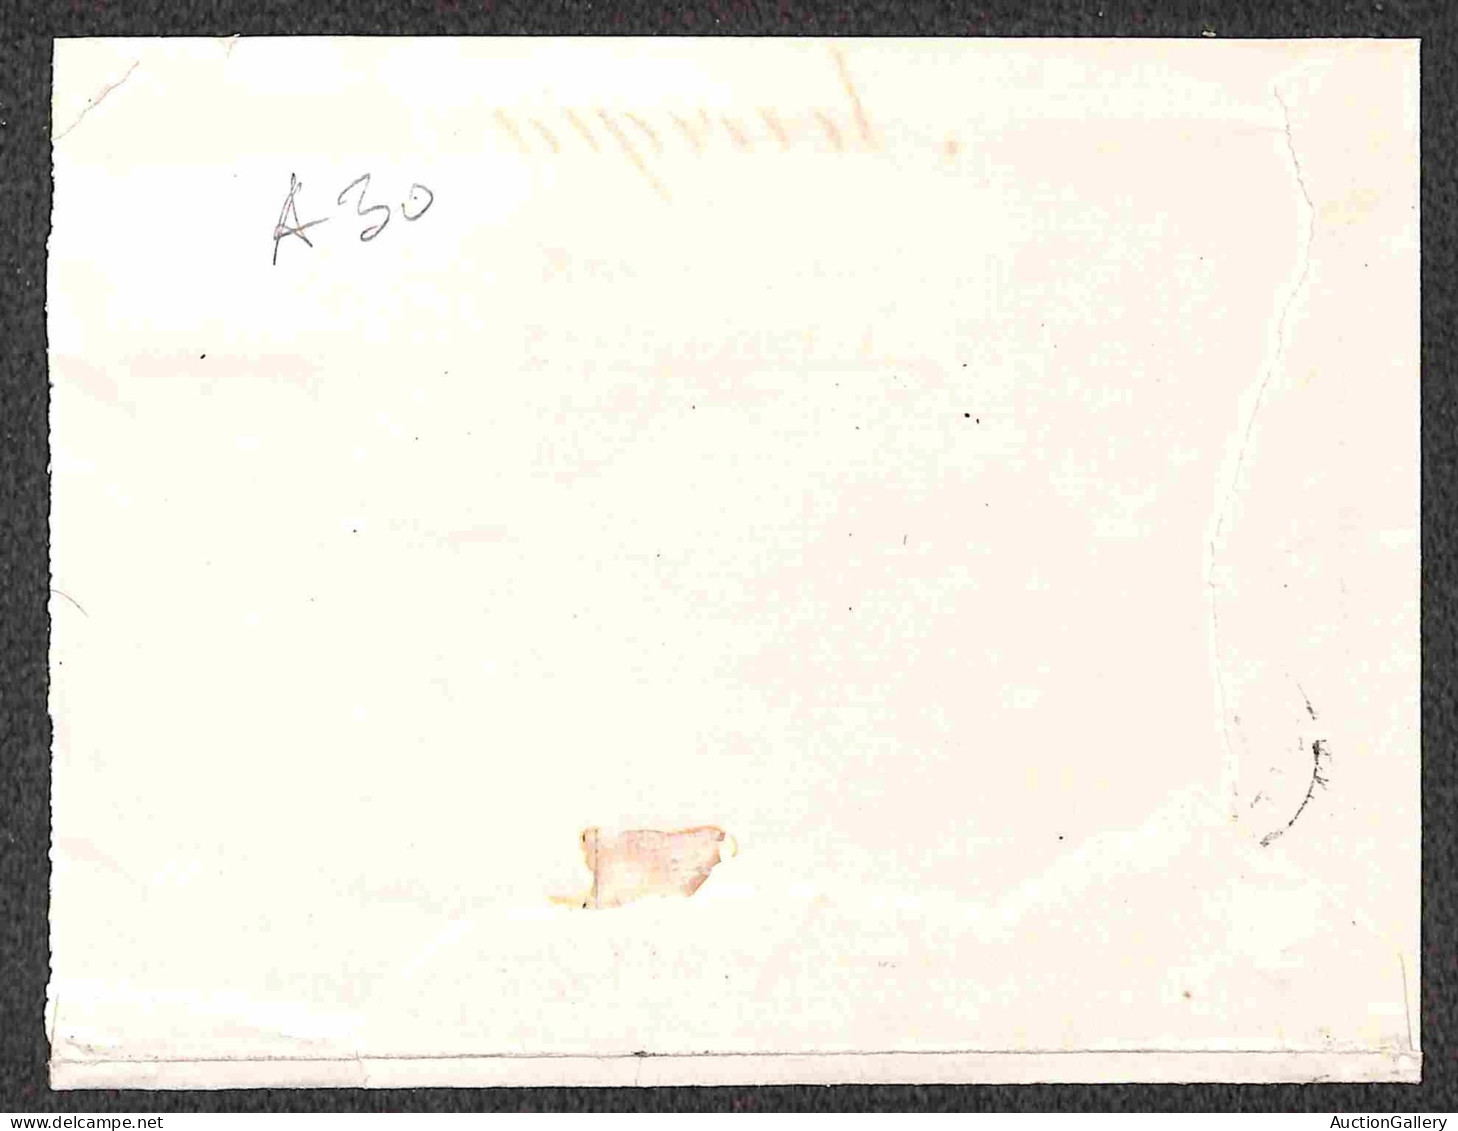 Regno - Umberto I - Due lettere e due frontespizi con 20 cent (61) tra cui un blocco di tre a seggiola e una combinazion